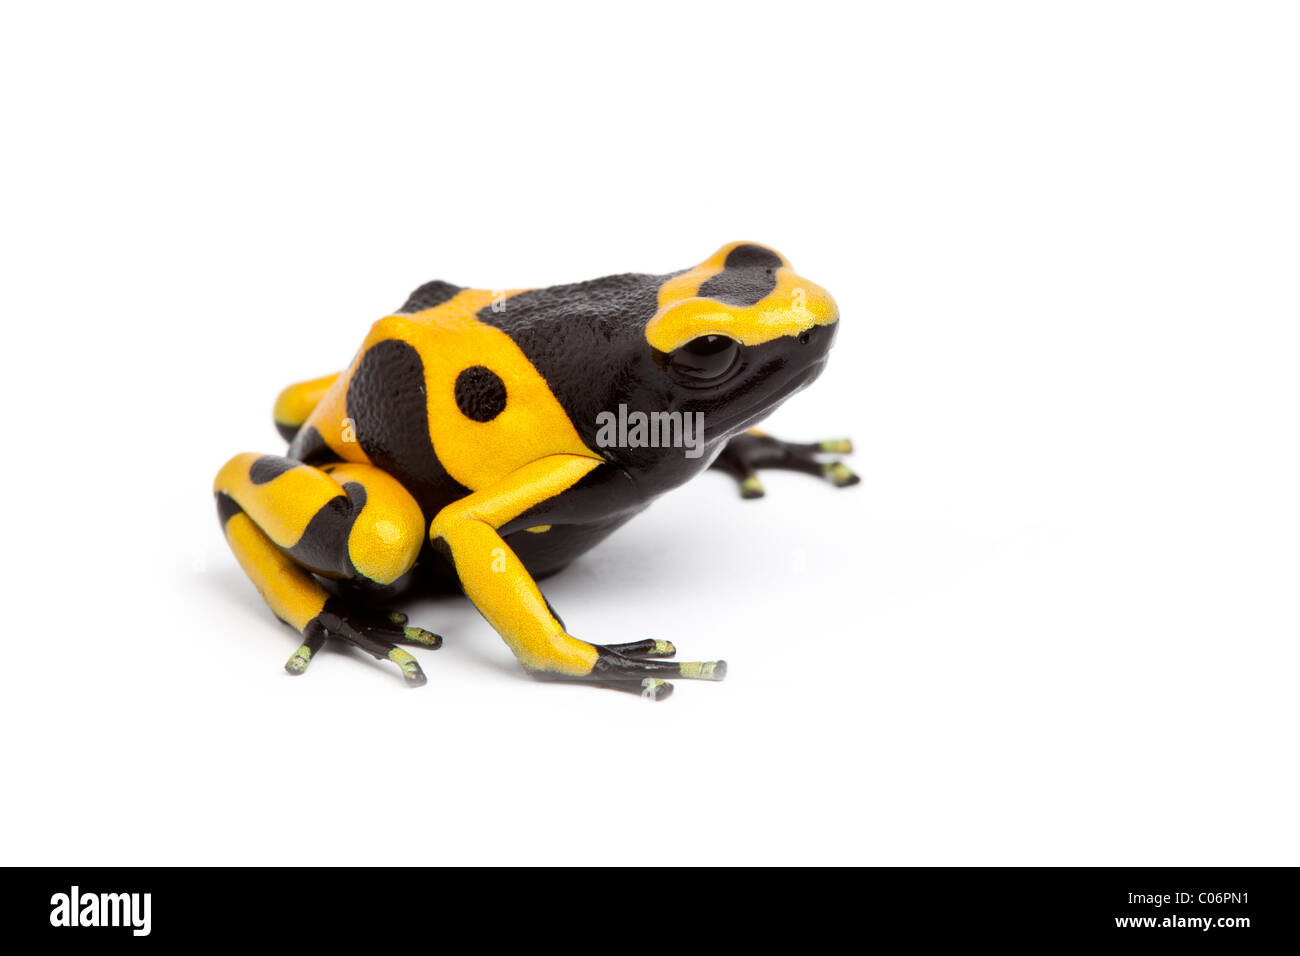 Yellow and black poison dart frog, Dendrobates leucomelas, on white background Stock Photo